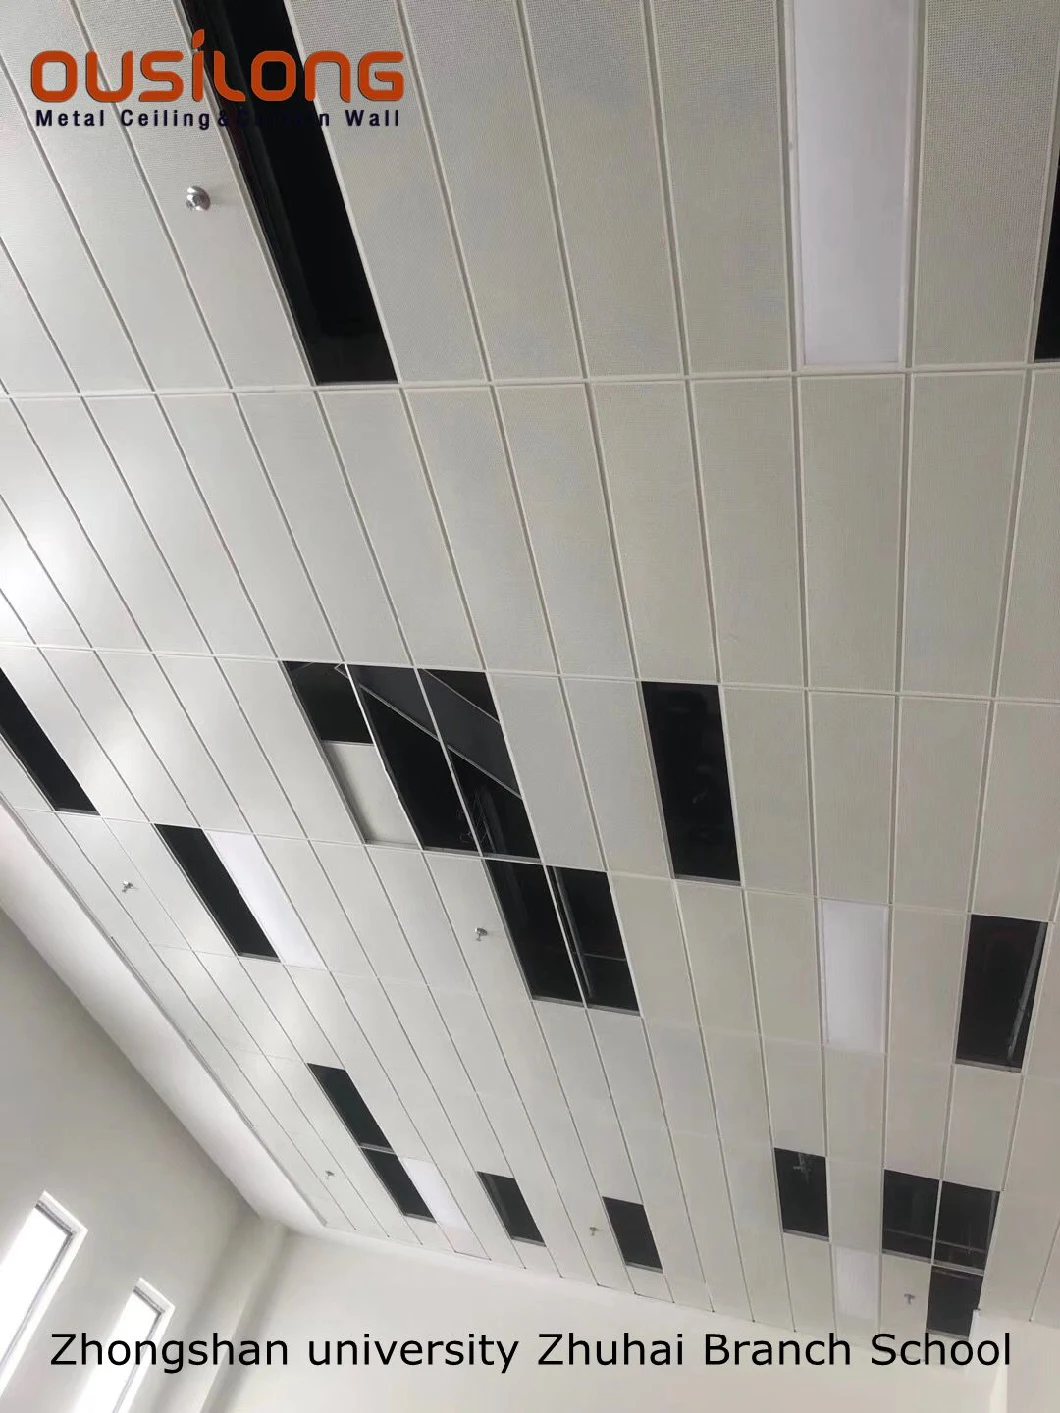 Perforated 3D Triangle Aluminum / Aluminium Panel Building Decorative Metal Ceiling Tile